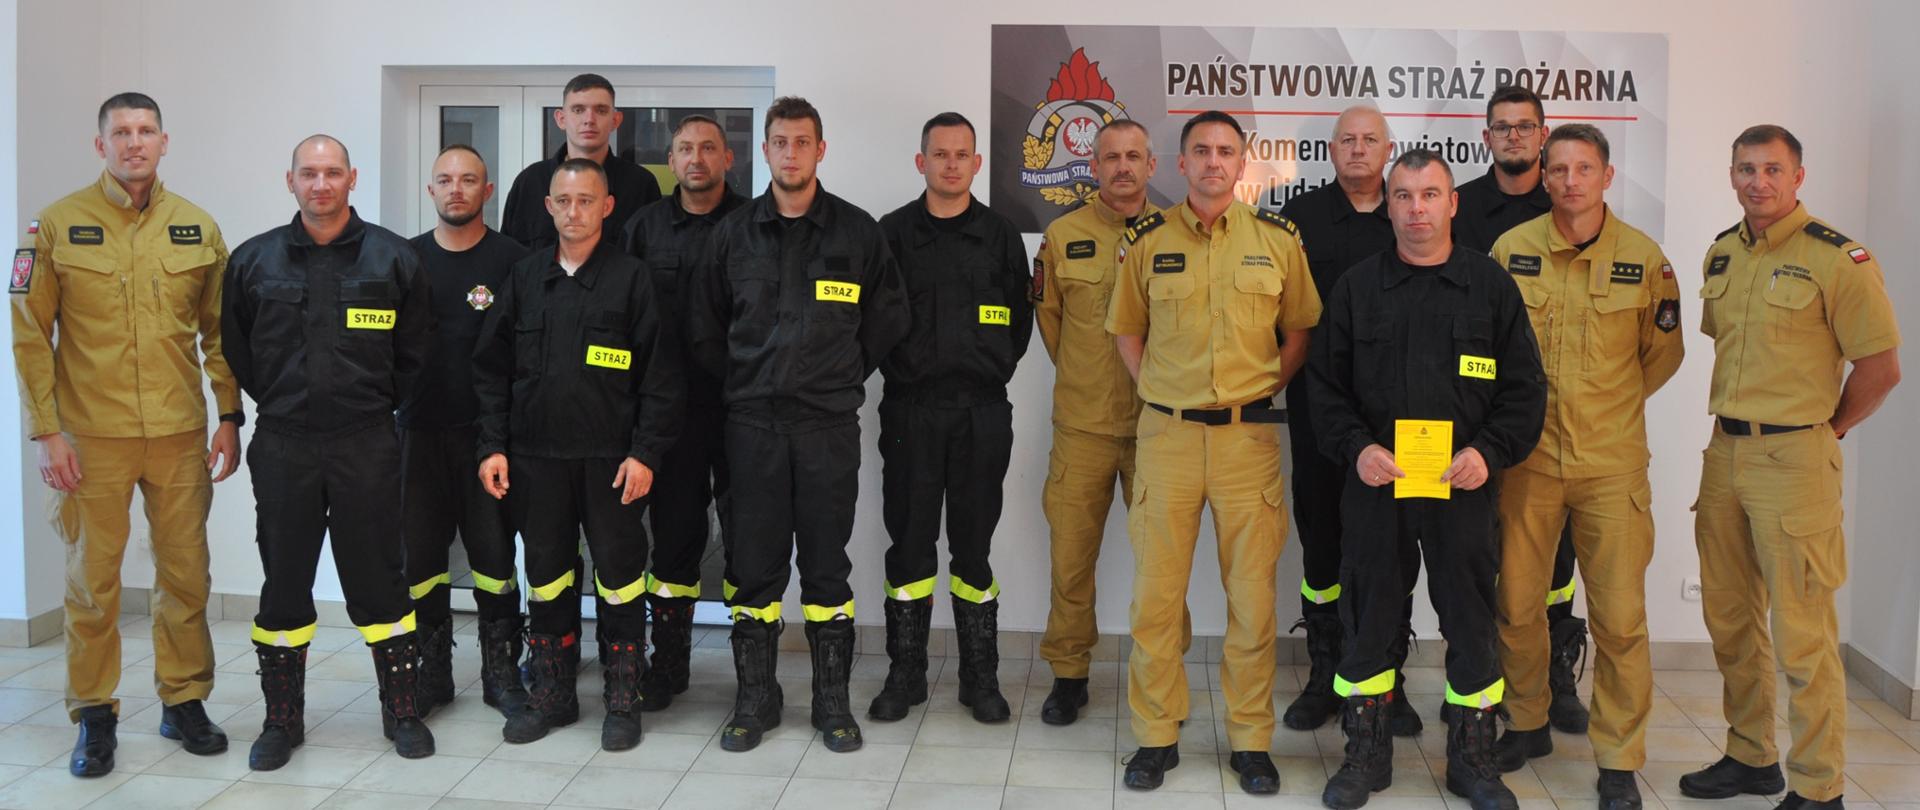 Zdjęcie przedstawia absolwentów szkolenia dowódców OSP wraz z kadrą kierowniczą jednostki PSP